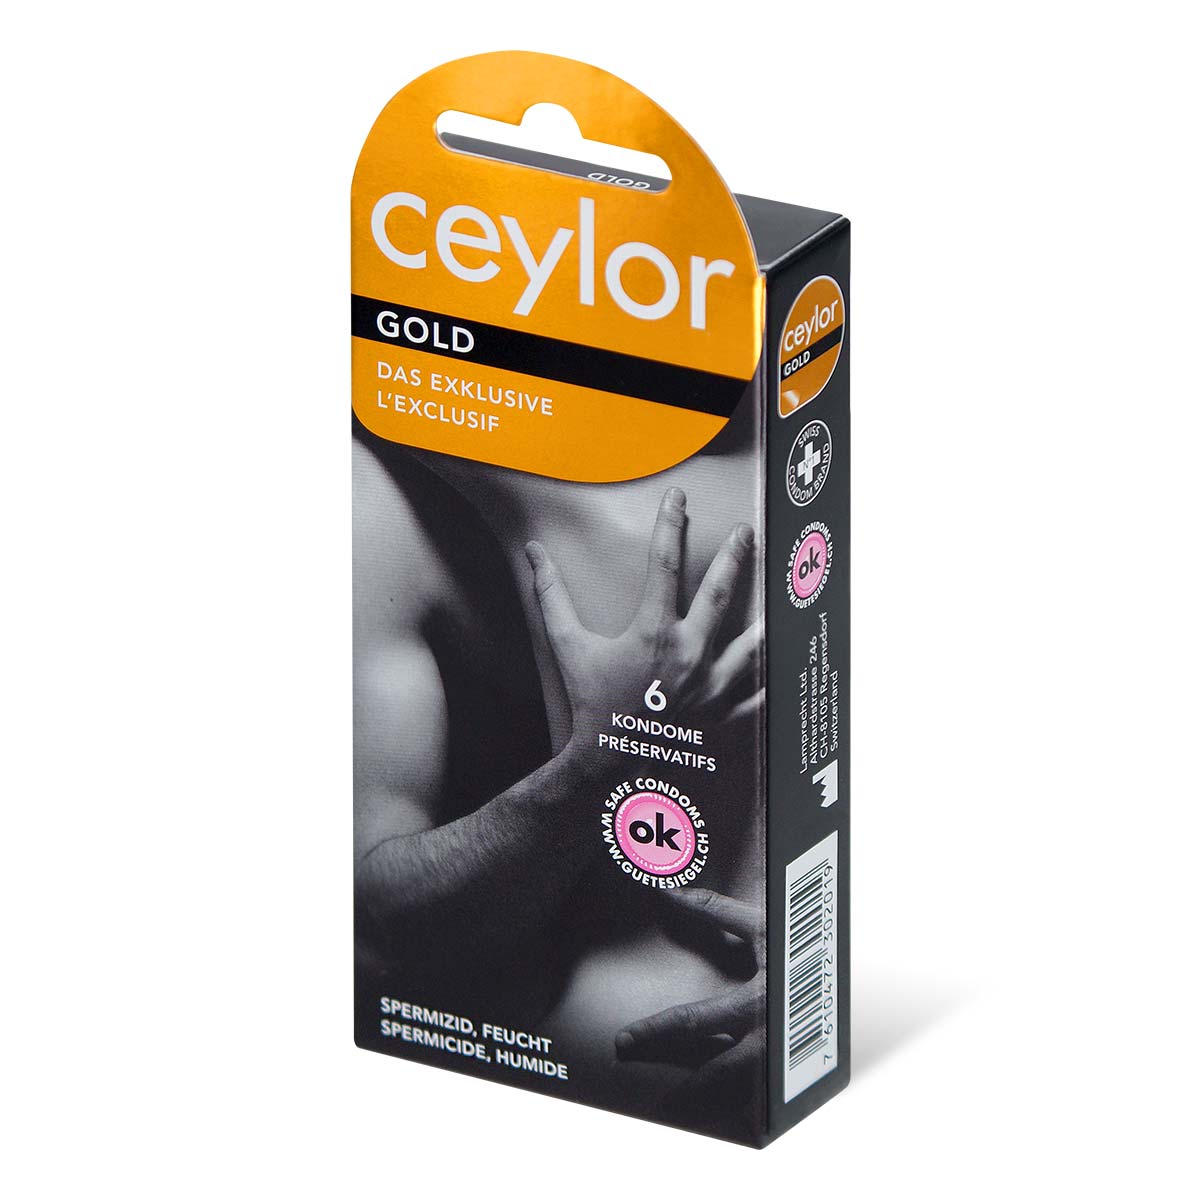 ceylor 黃金雙重保護 6 片裝 乳膠安全套-p_1